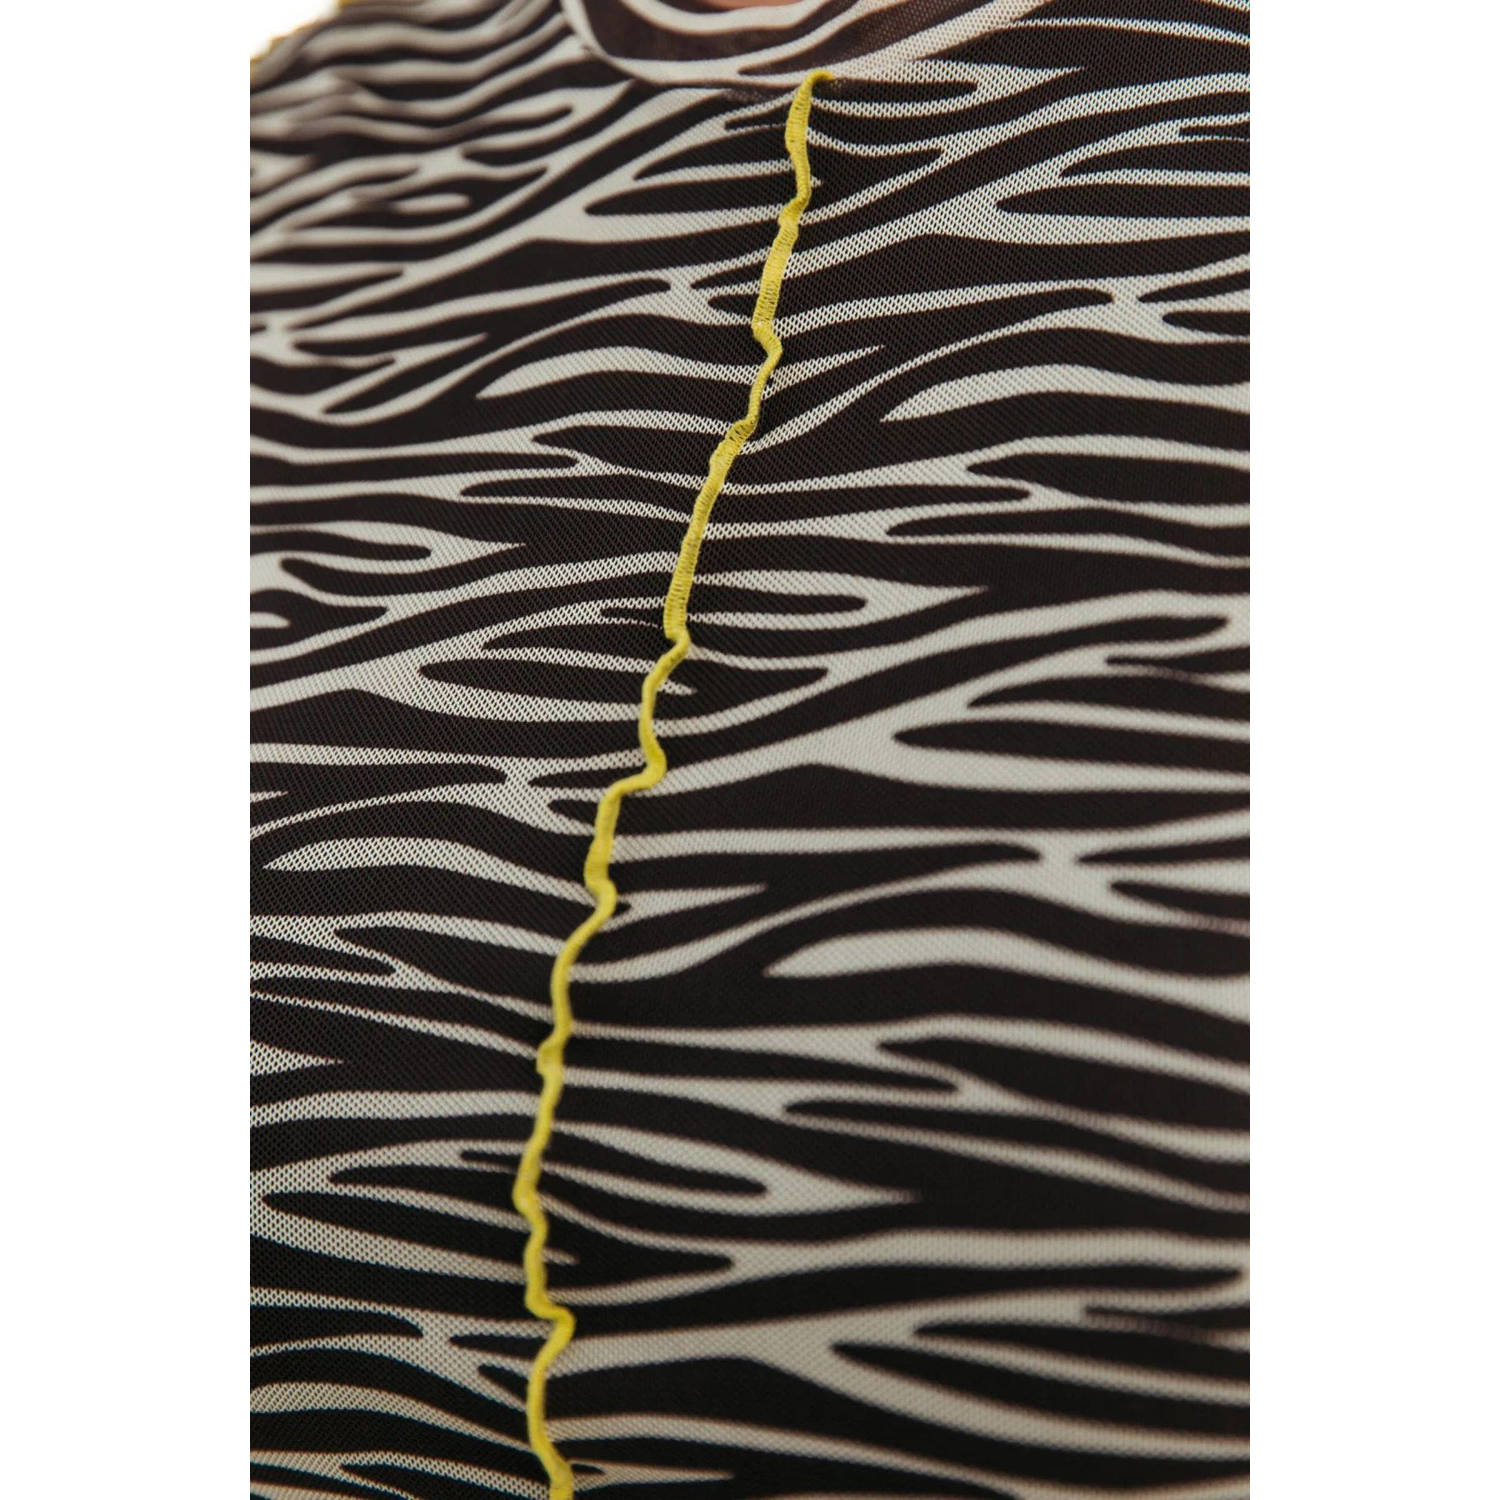 Colourful Rebel gebreide mesh maxi jurk Maude met zebraprint en mesh bruin beige geel